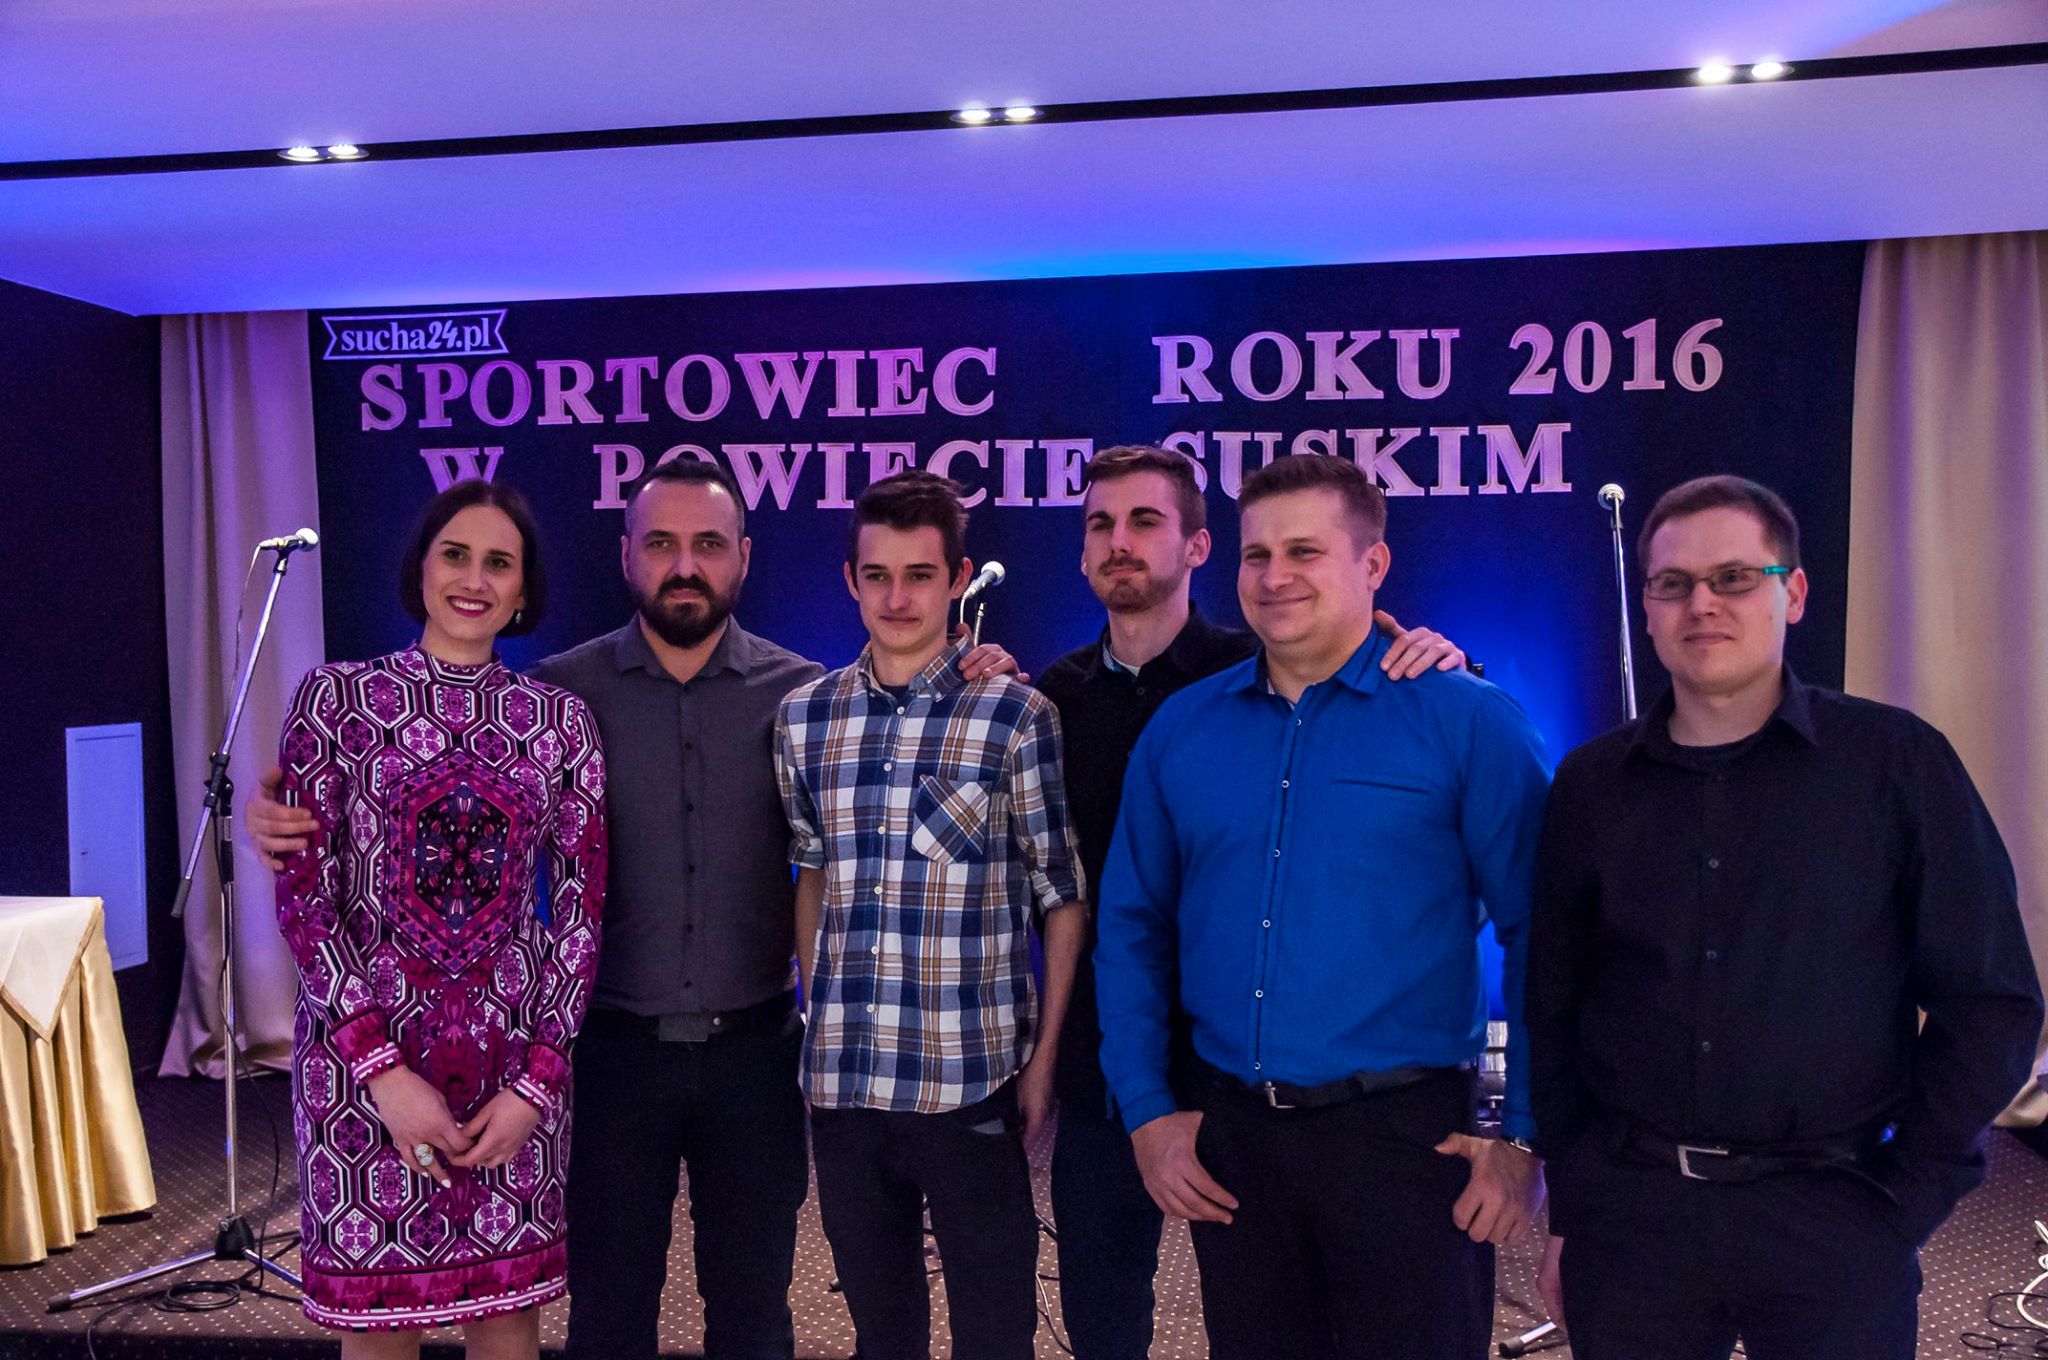 Sportowiec roku 2016 w Powiecie Suskim, Paka Band